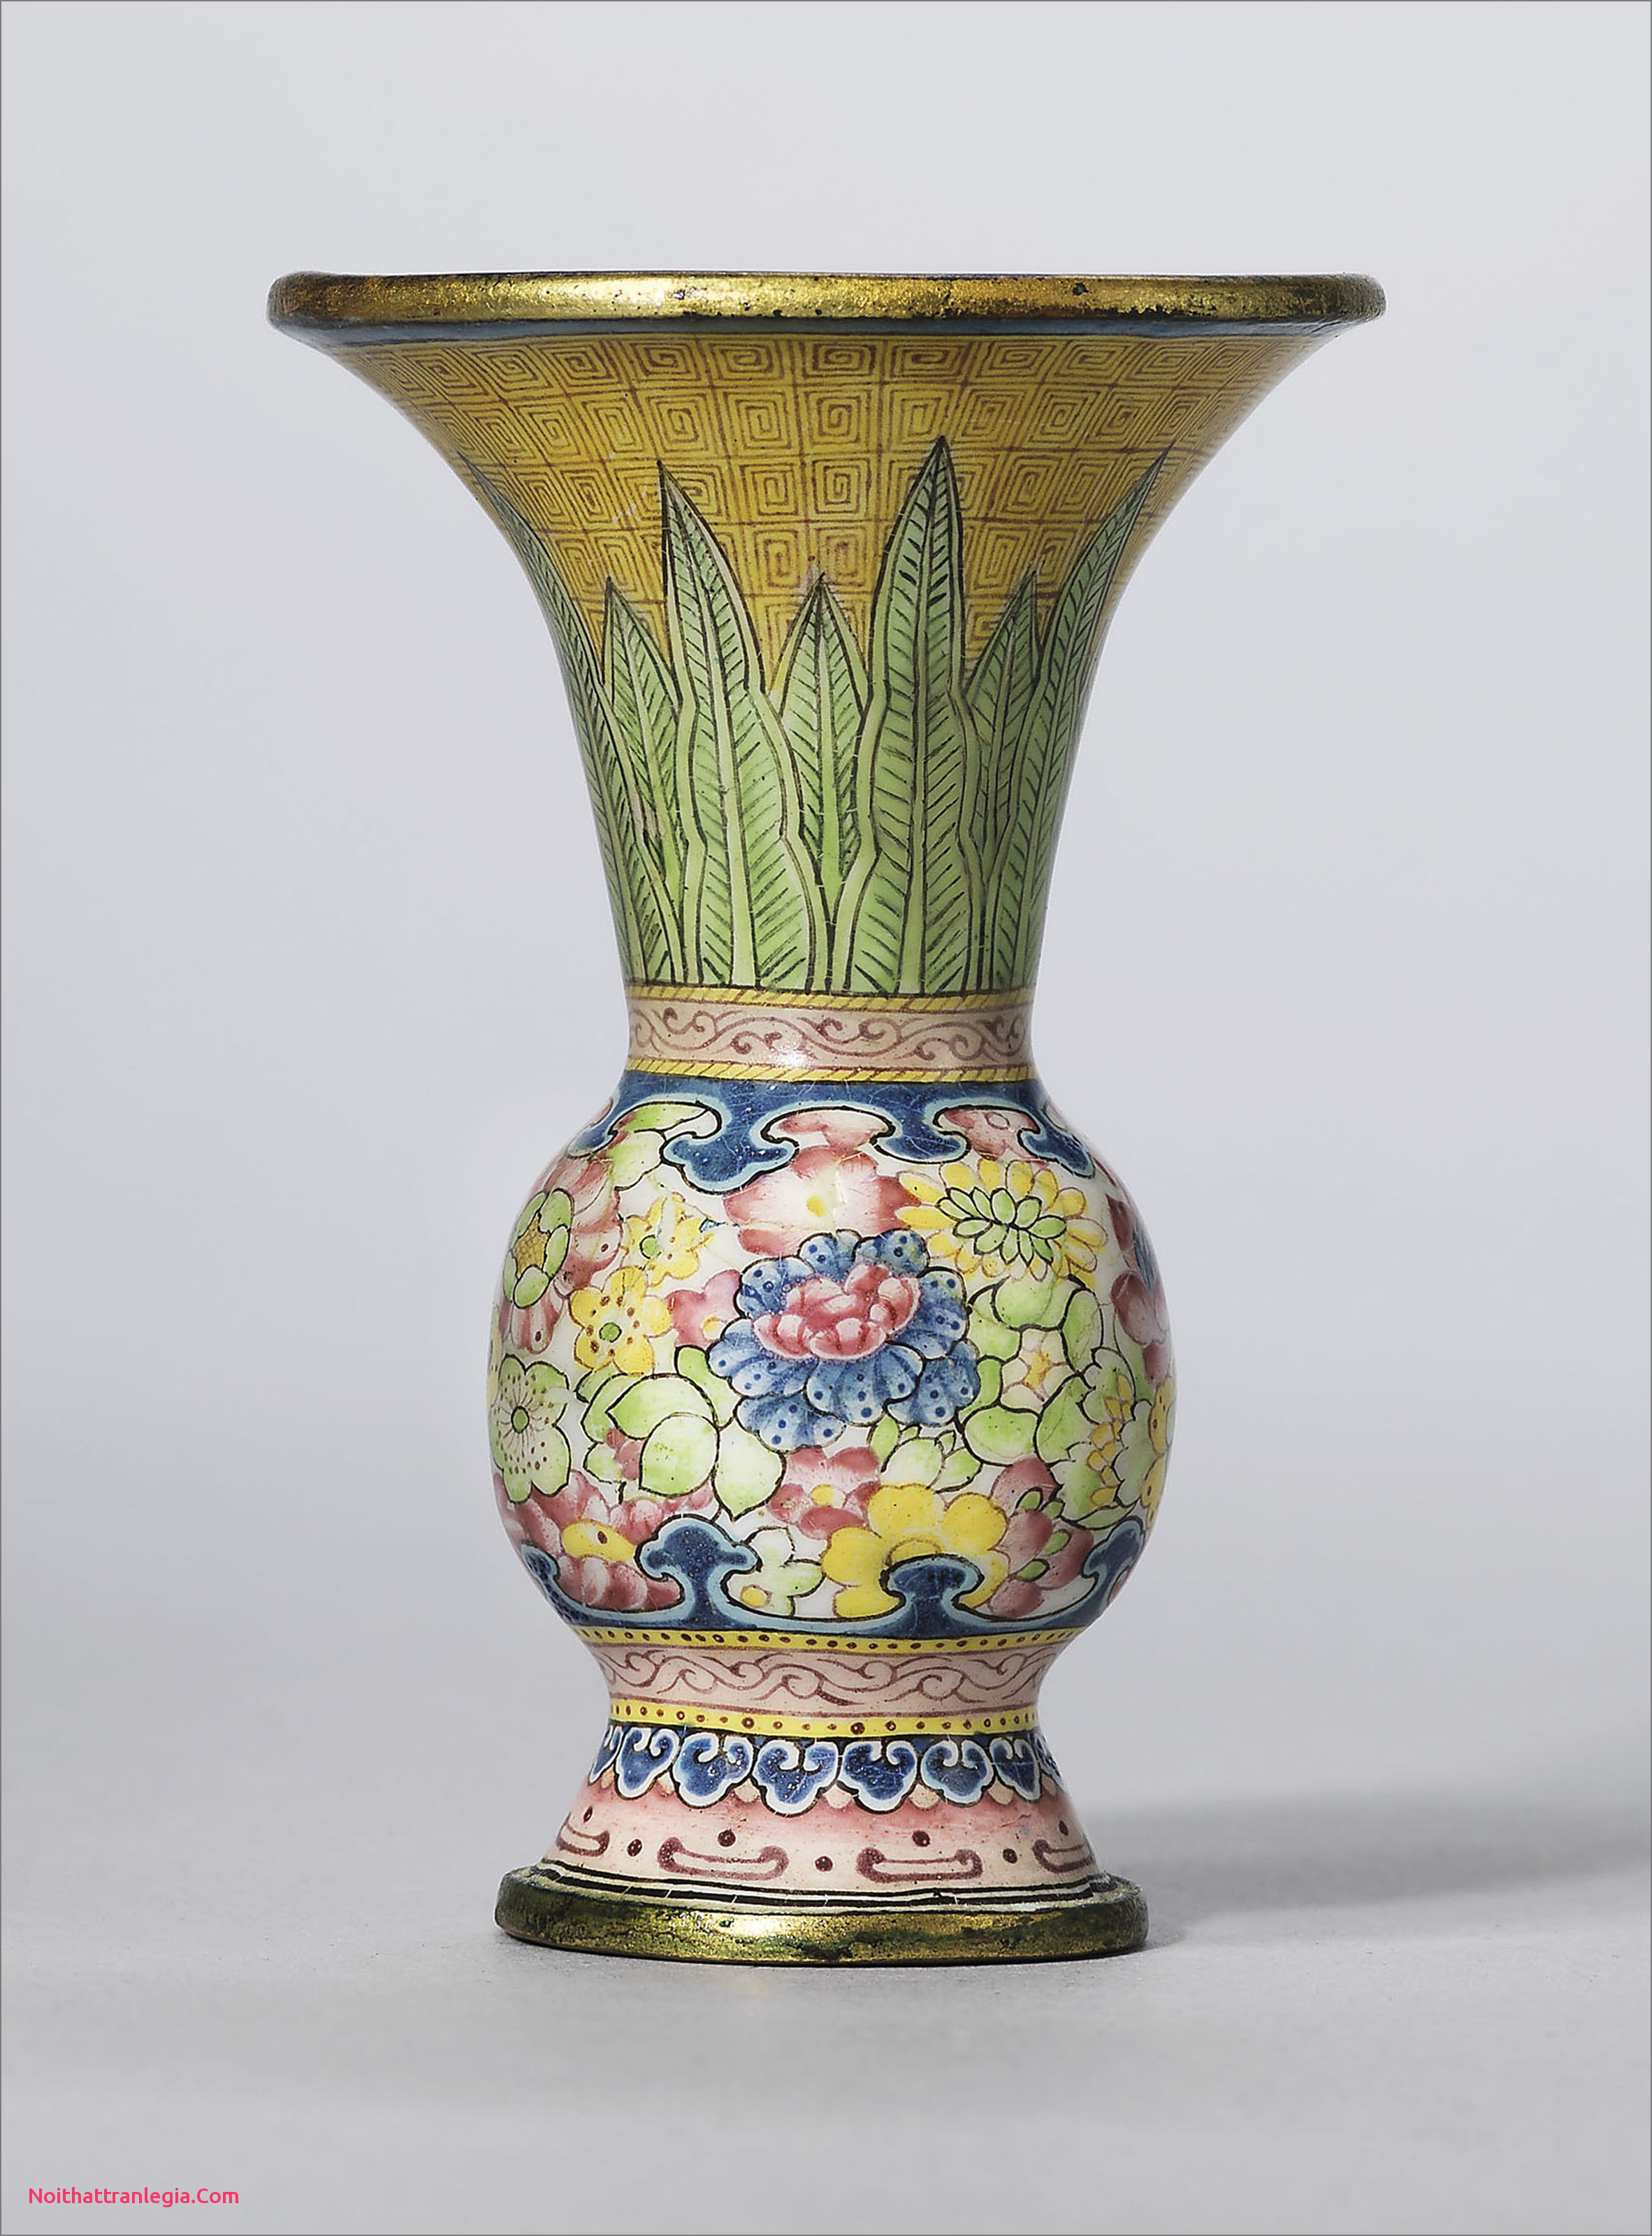 Chinese Ceramic Vases Antique Of 20 Chinese Antique Vase Noithattranlegia Vases Design Pertaining to Chinese Antique Vase Unique A Guide to the Symbolism Of Flowers On Chinese Ceramics Of Chinese Antique Vase